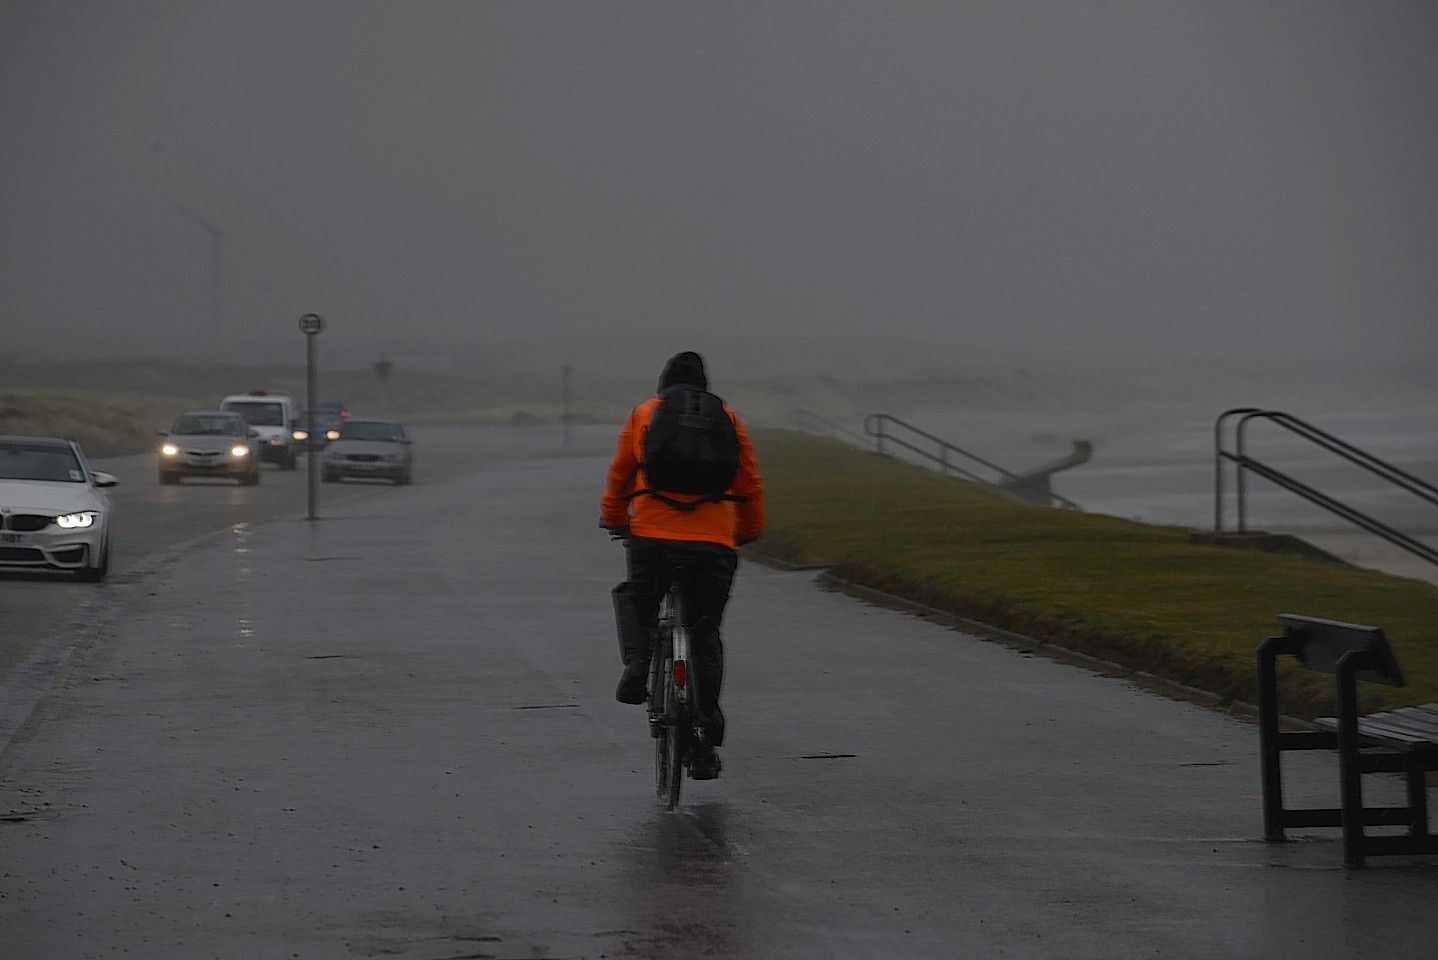 Bad weather at Aberdeen beach